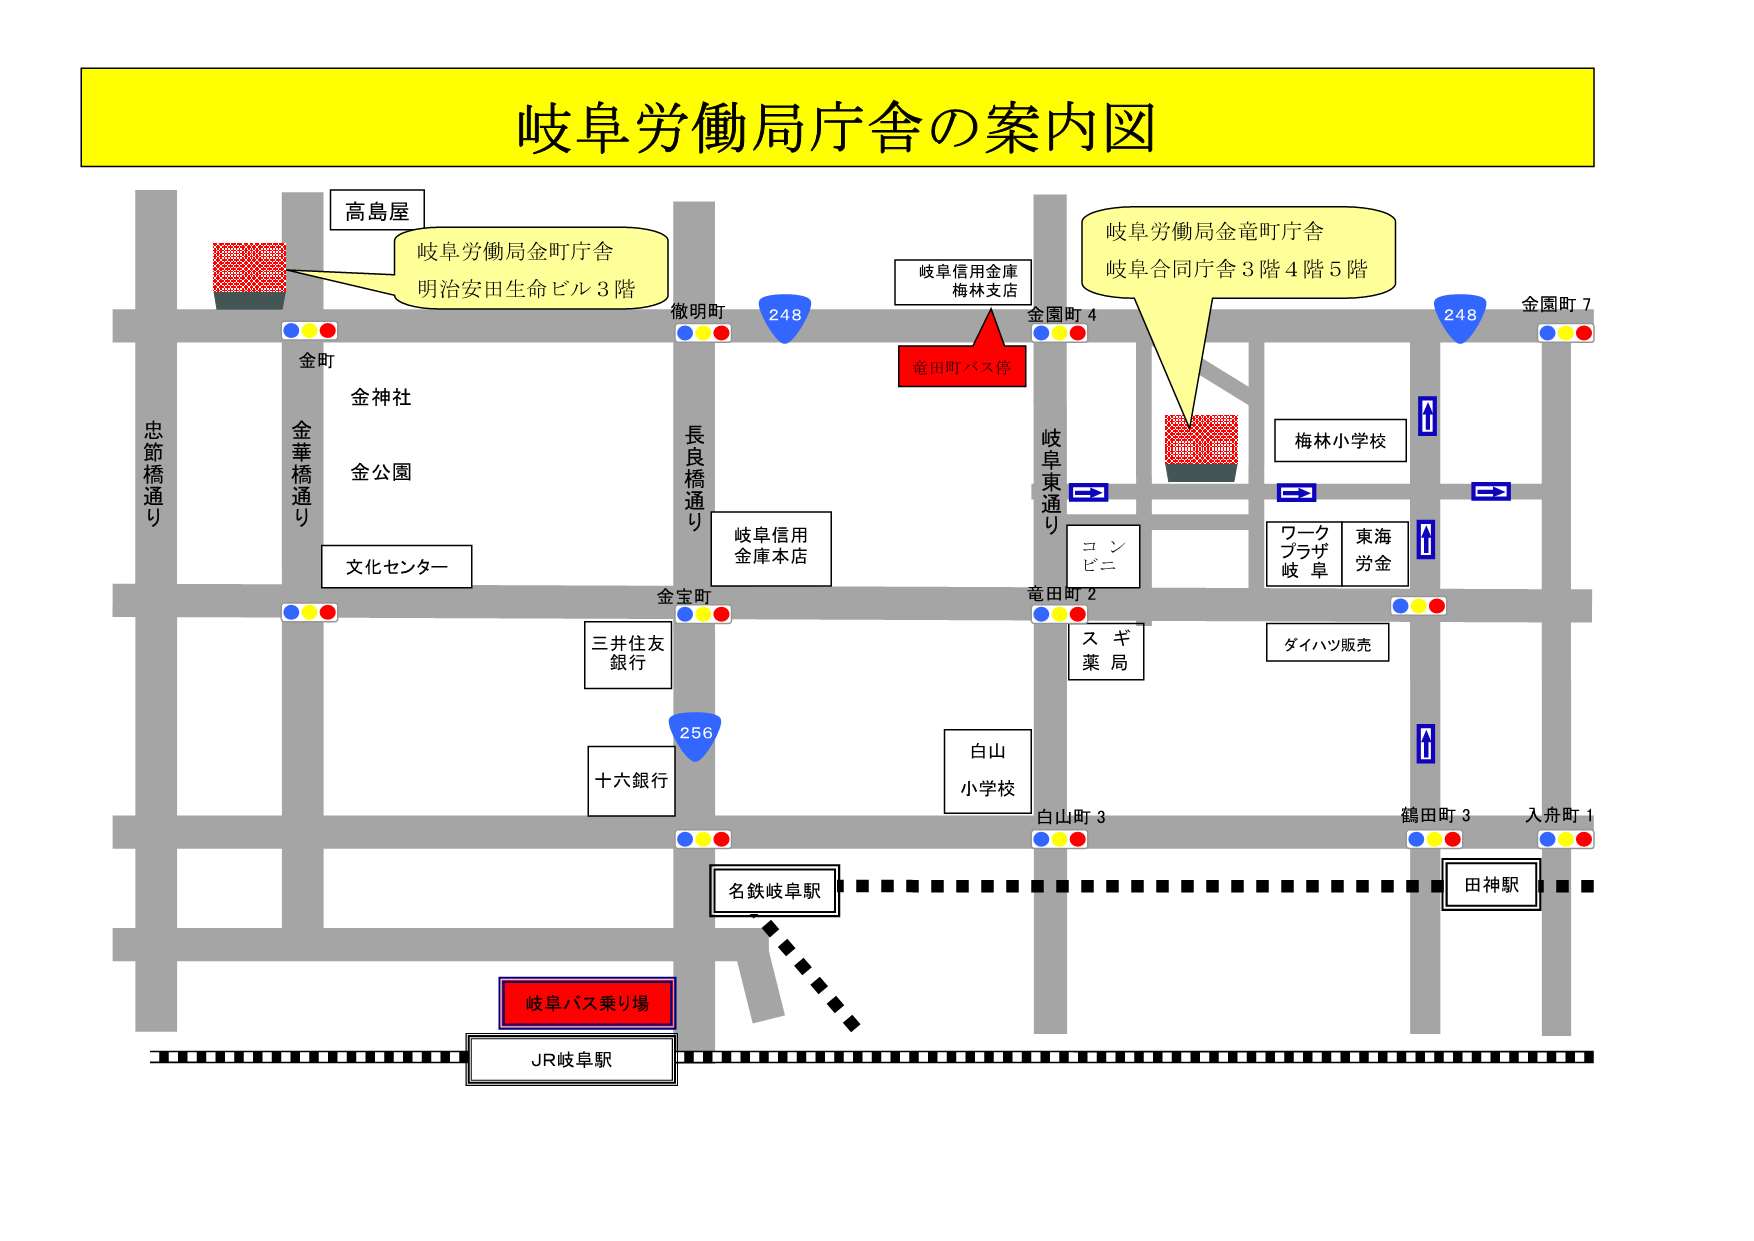 各岐阜労働局庁舎への案内図を掲載